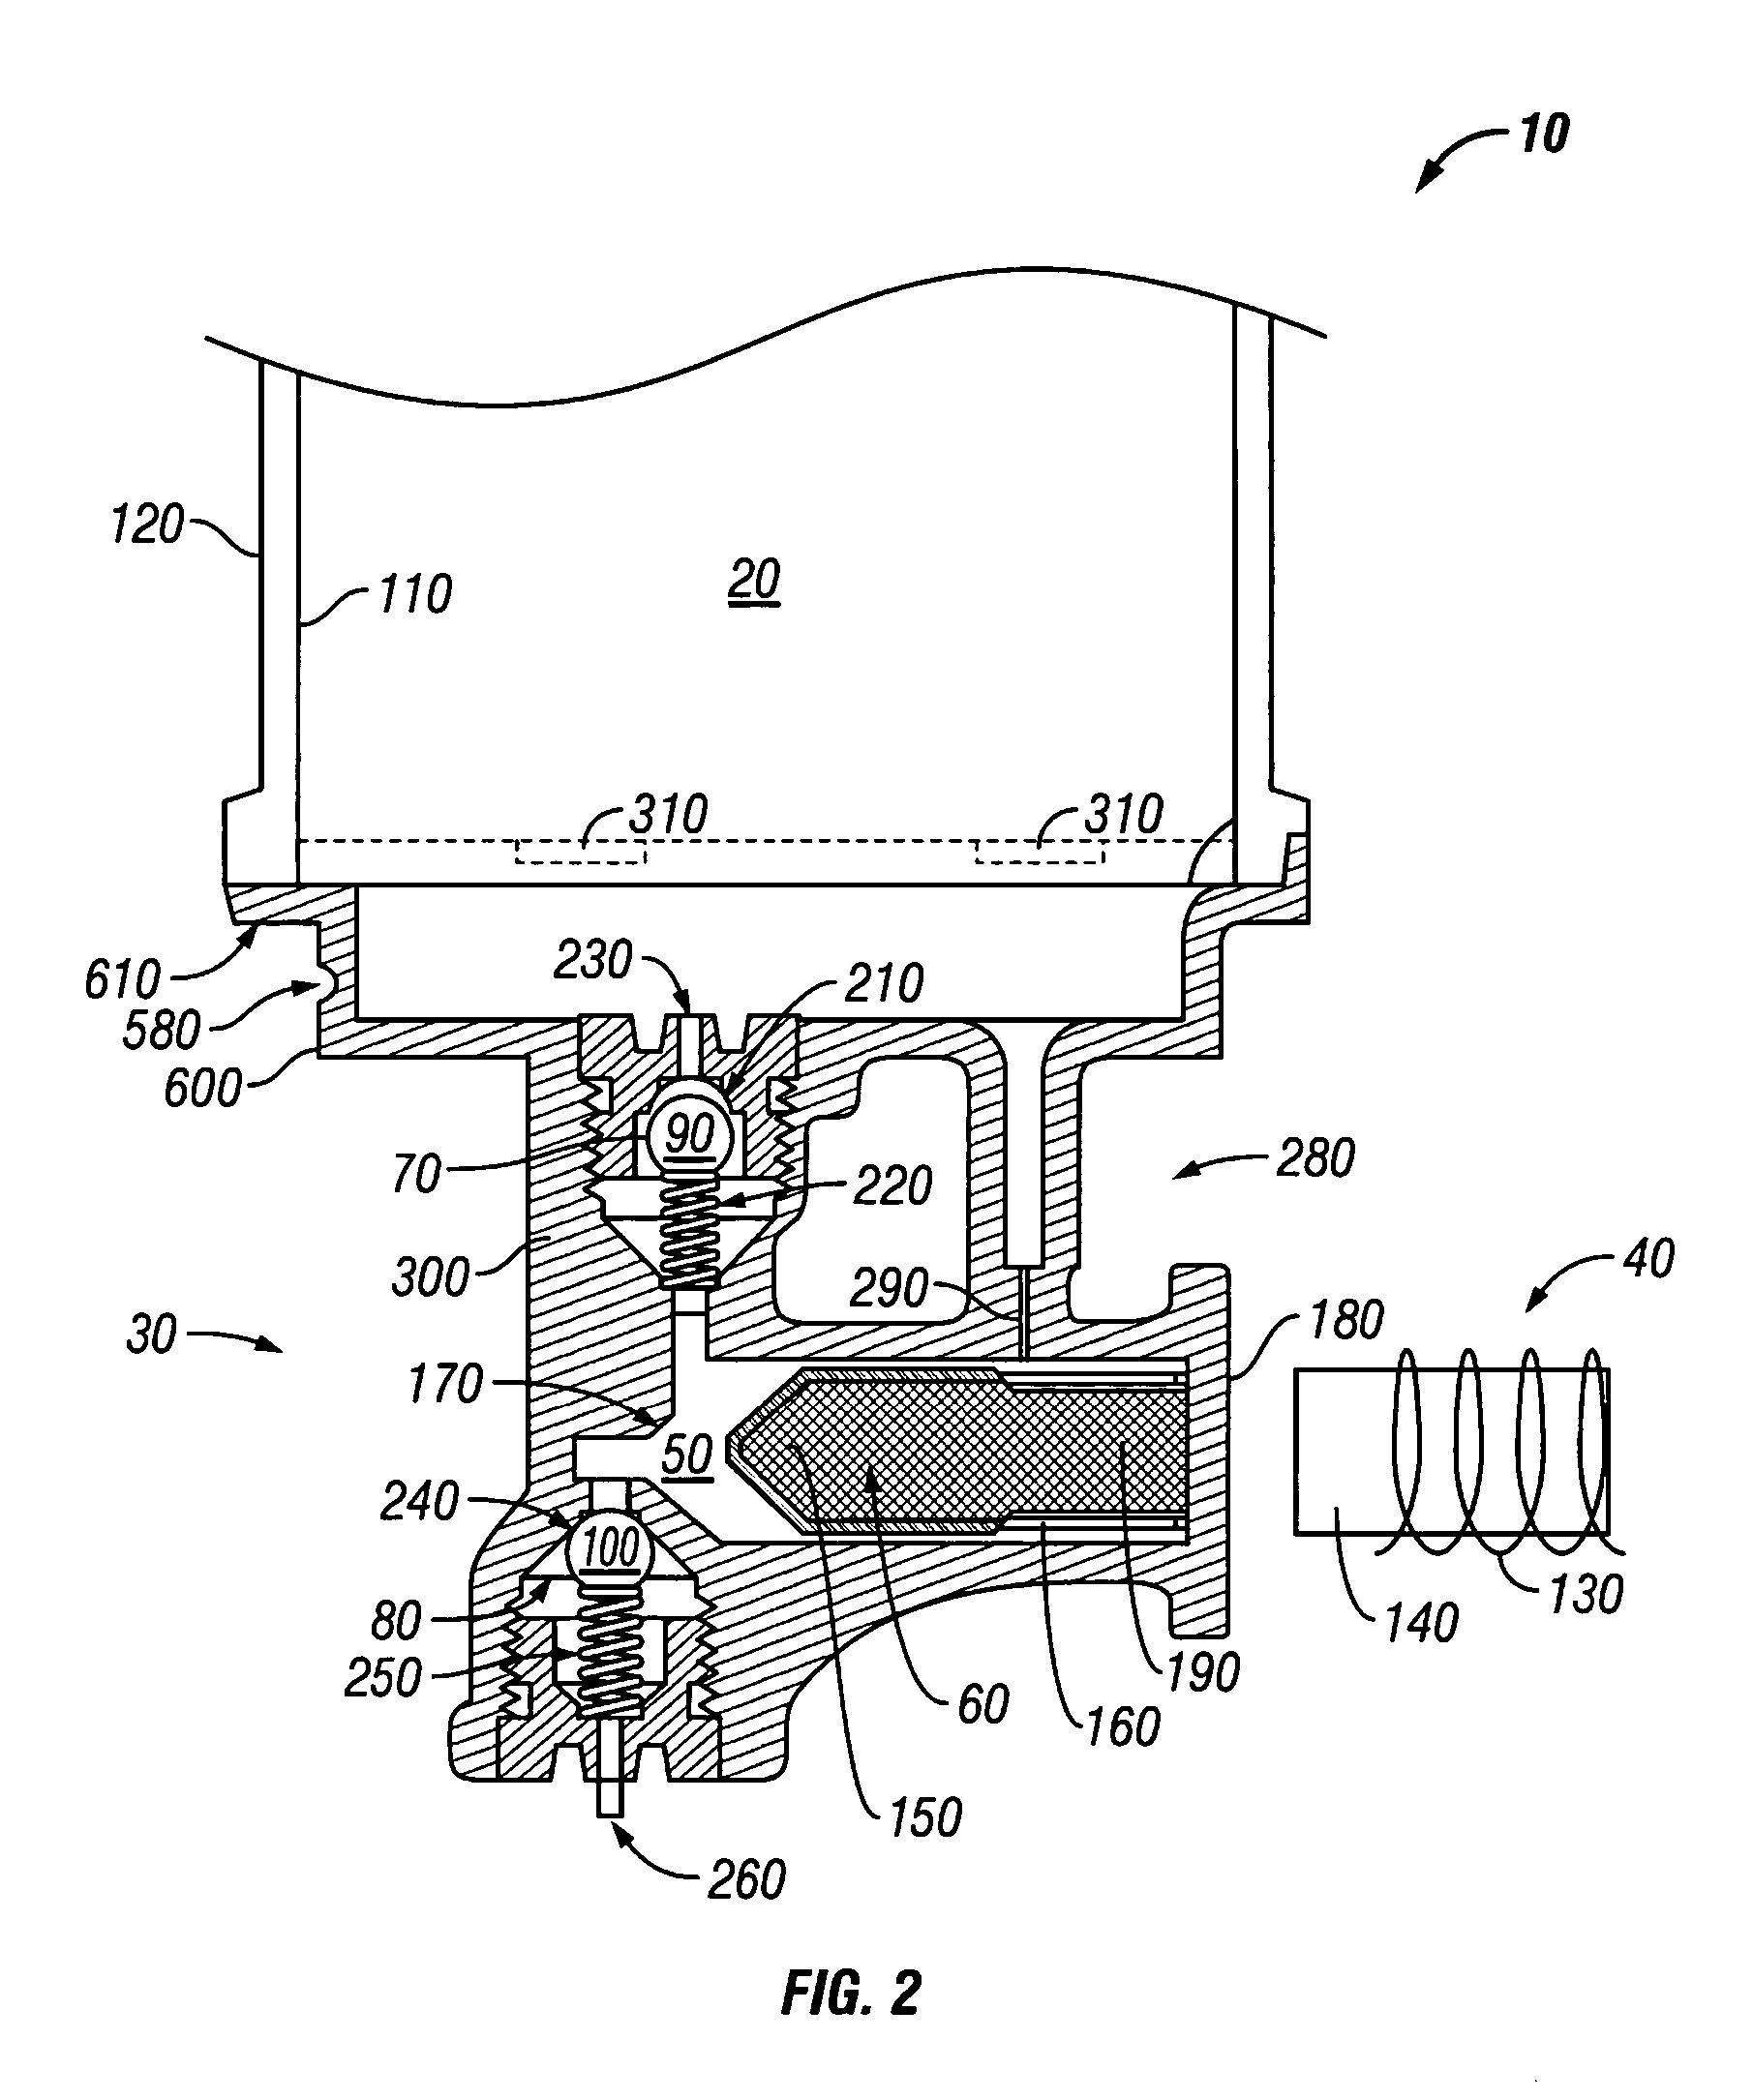 Fluid dispensing apparatus